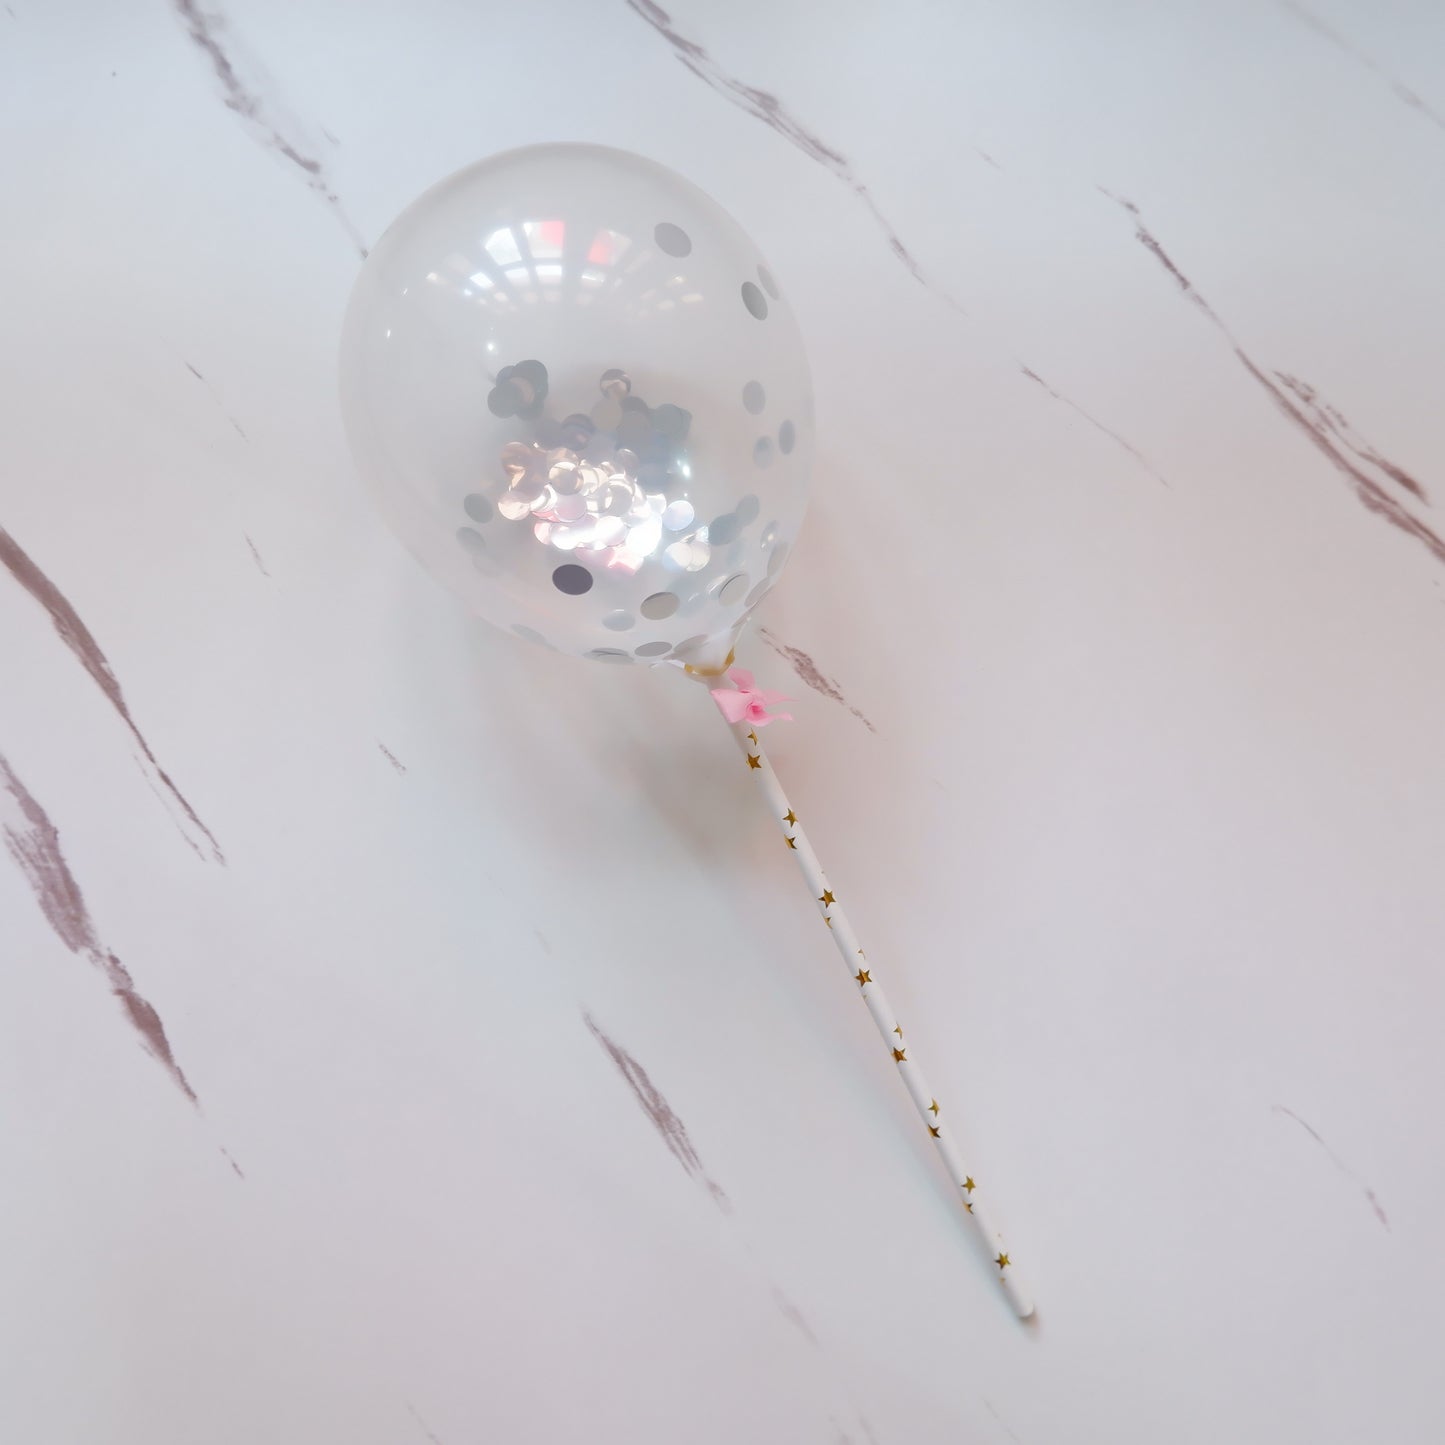 Mini Balloon